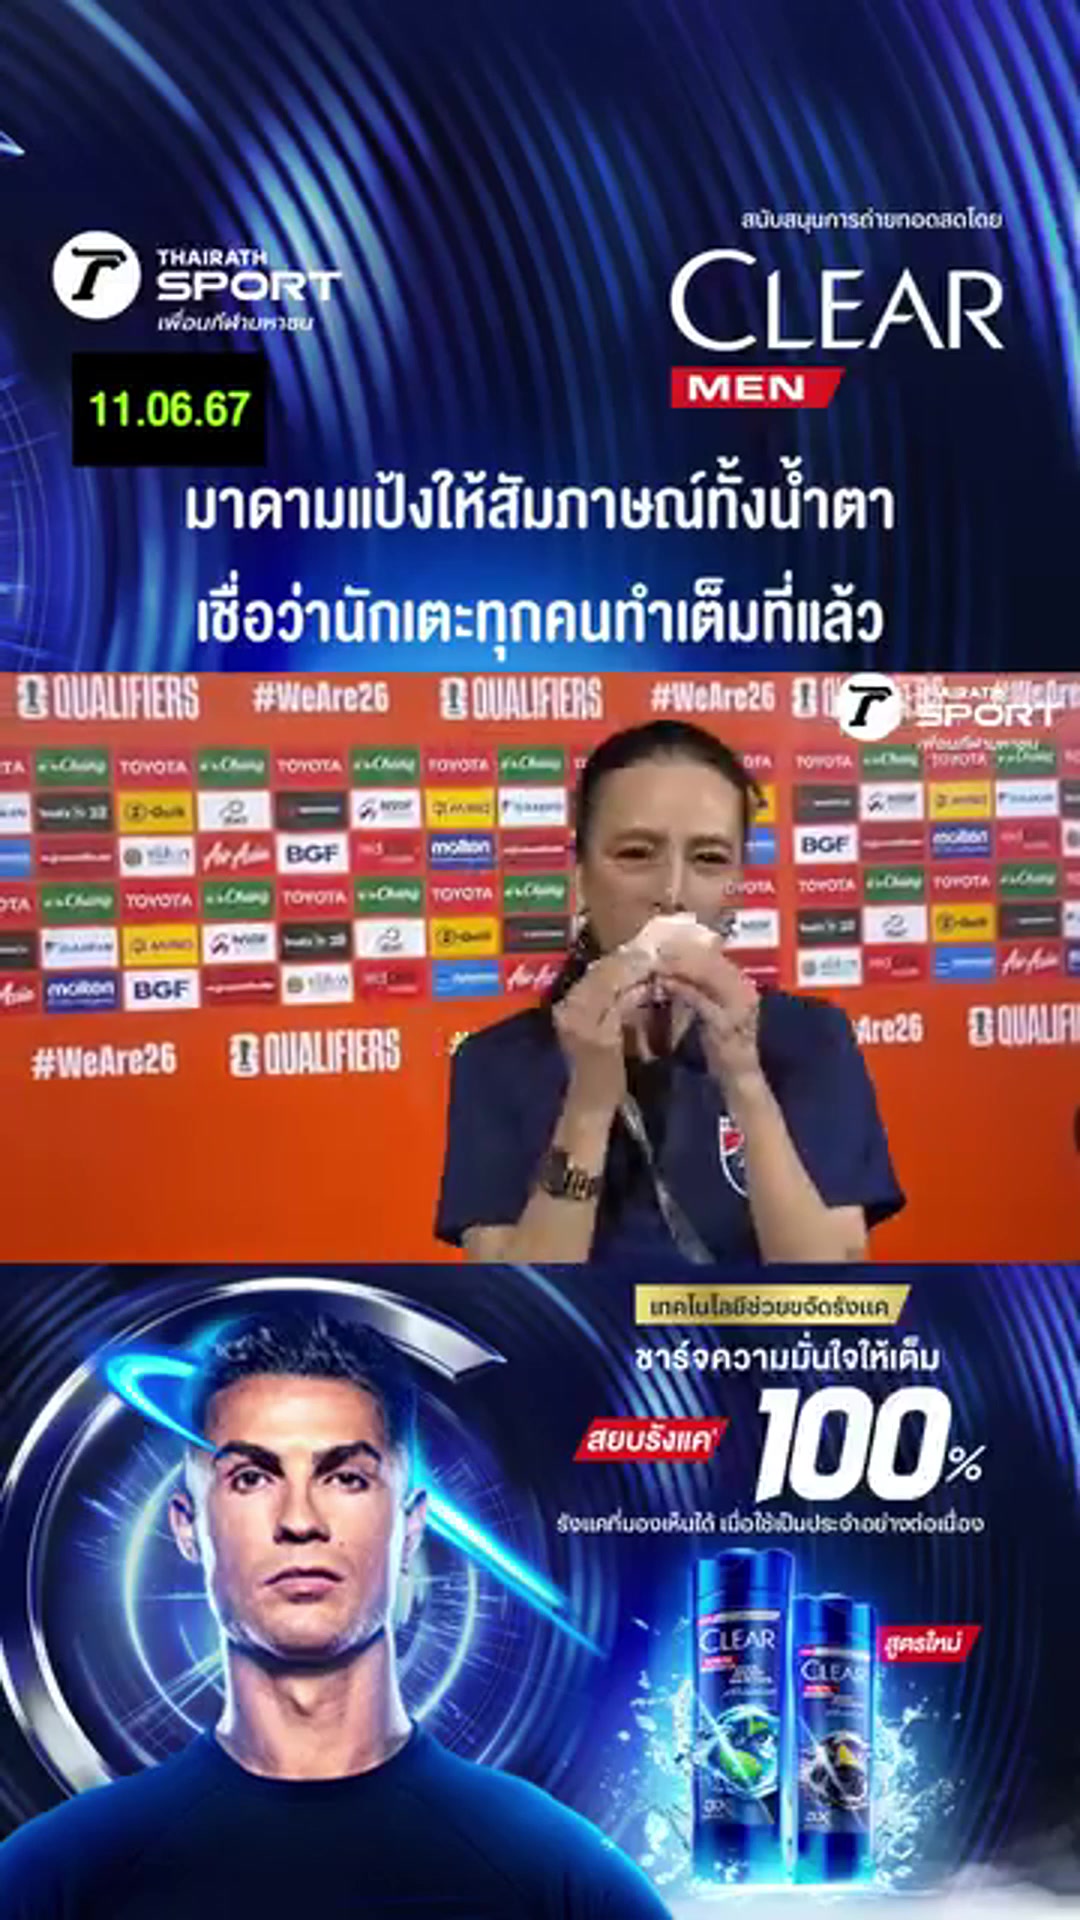  赛后泰国足协女主席接受采访时哭了